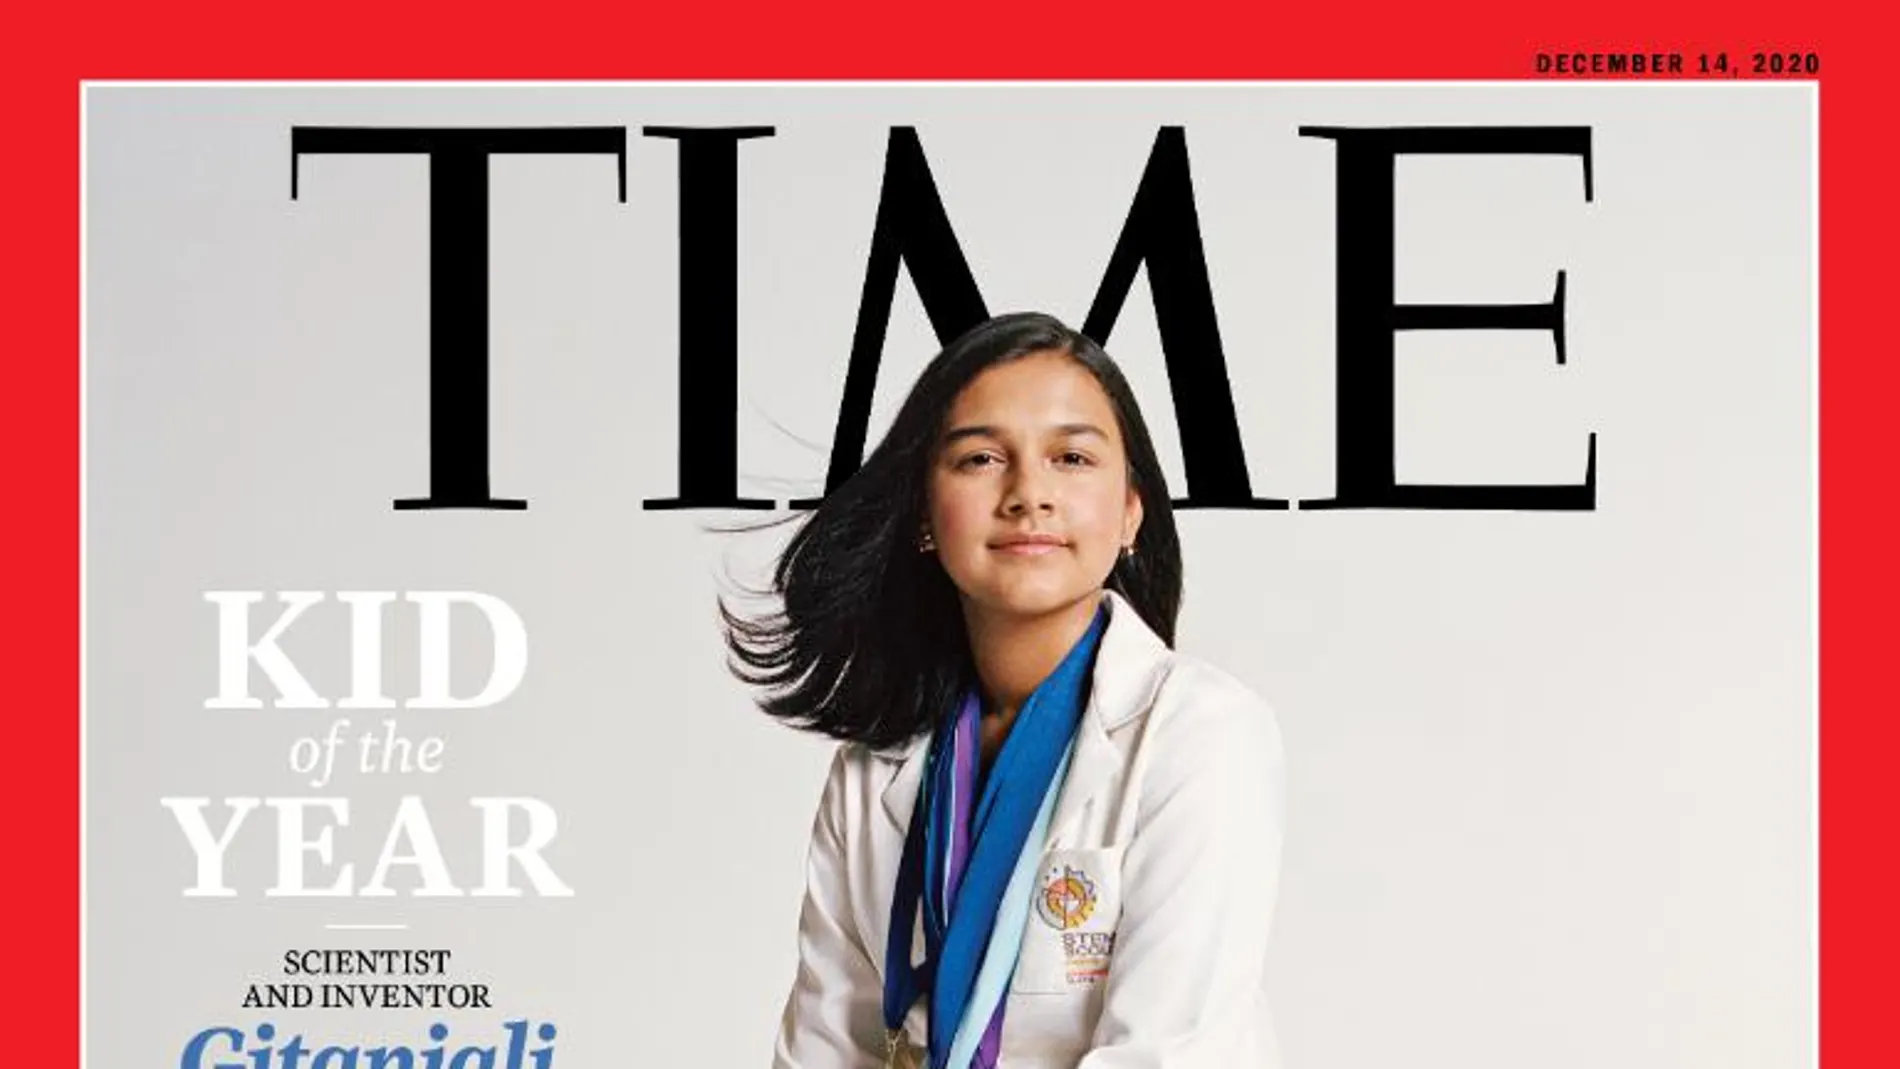 Gitanjali Rao, en la portada de la revista Time